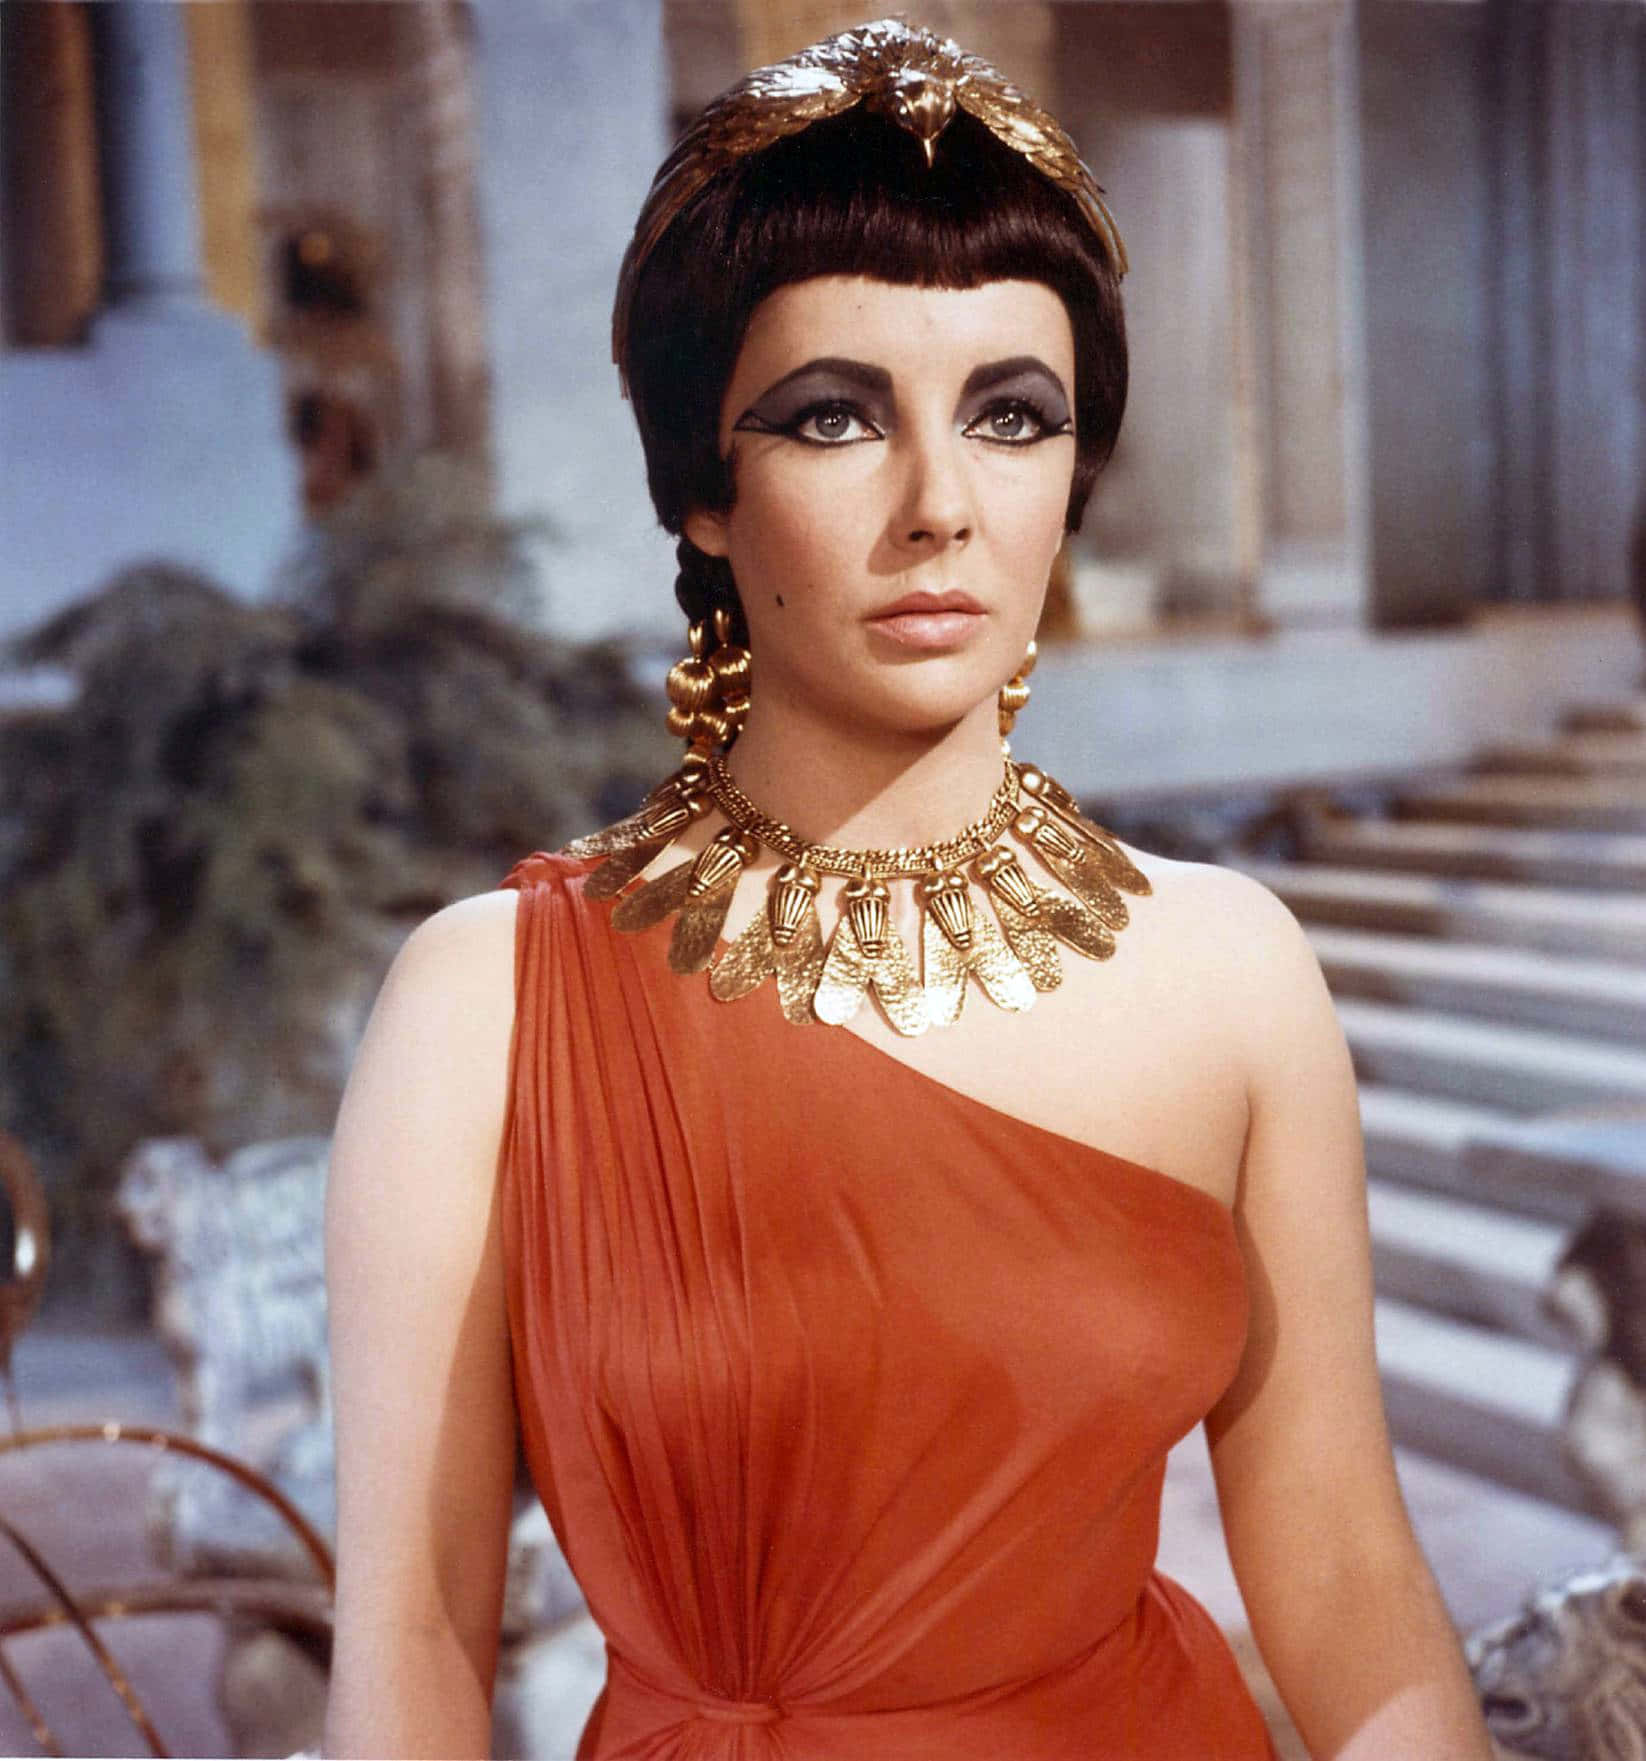 Mark Antony and Cleopatra meet in Egypt